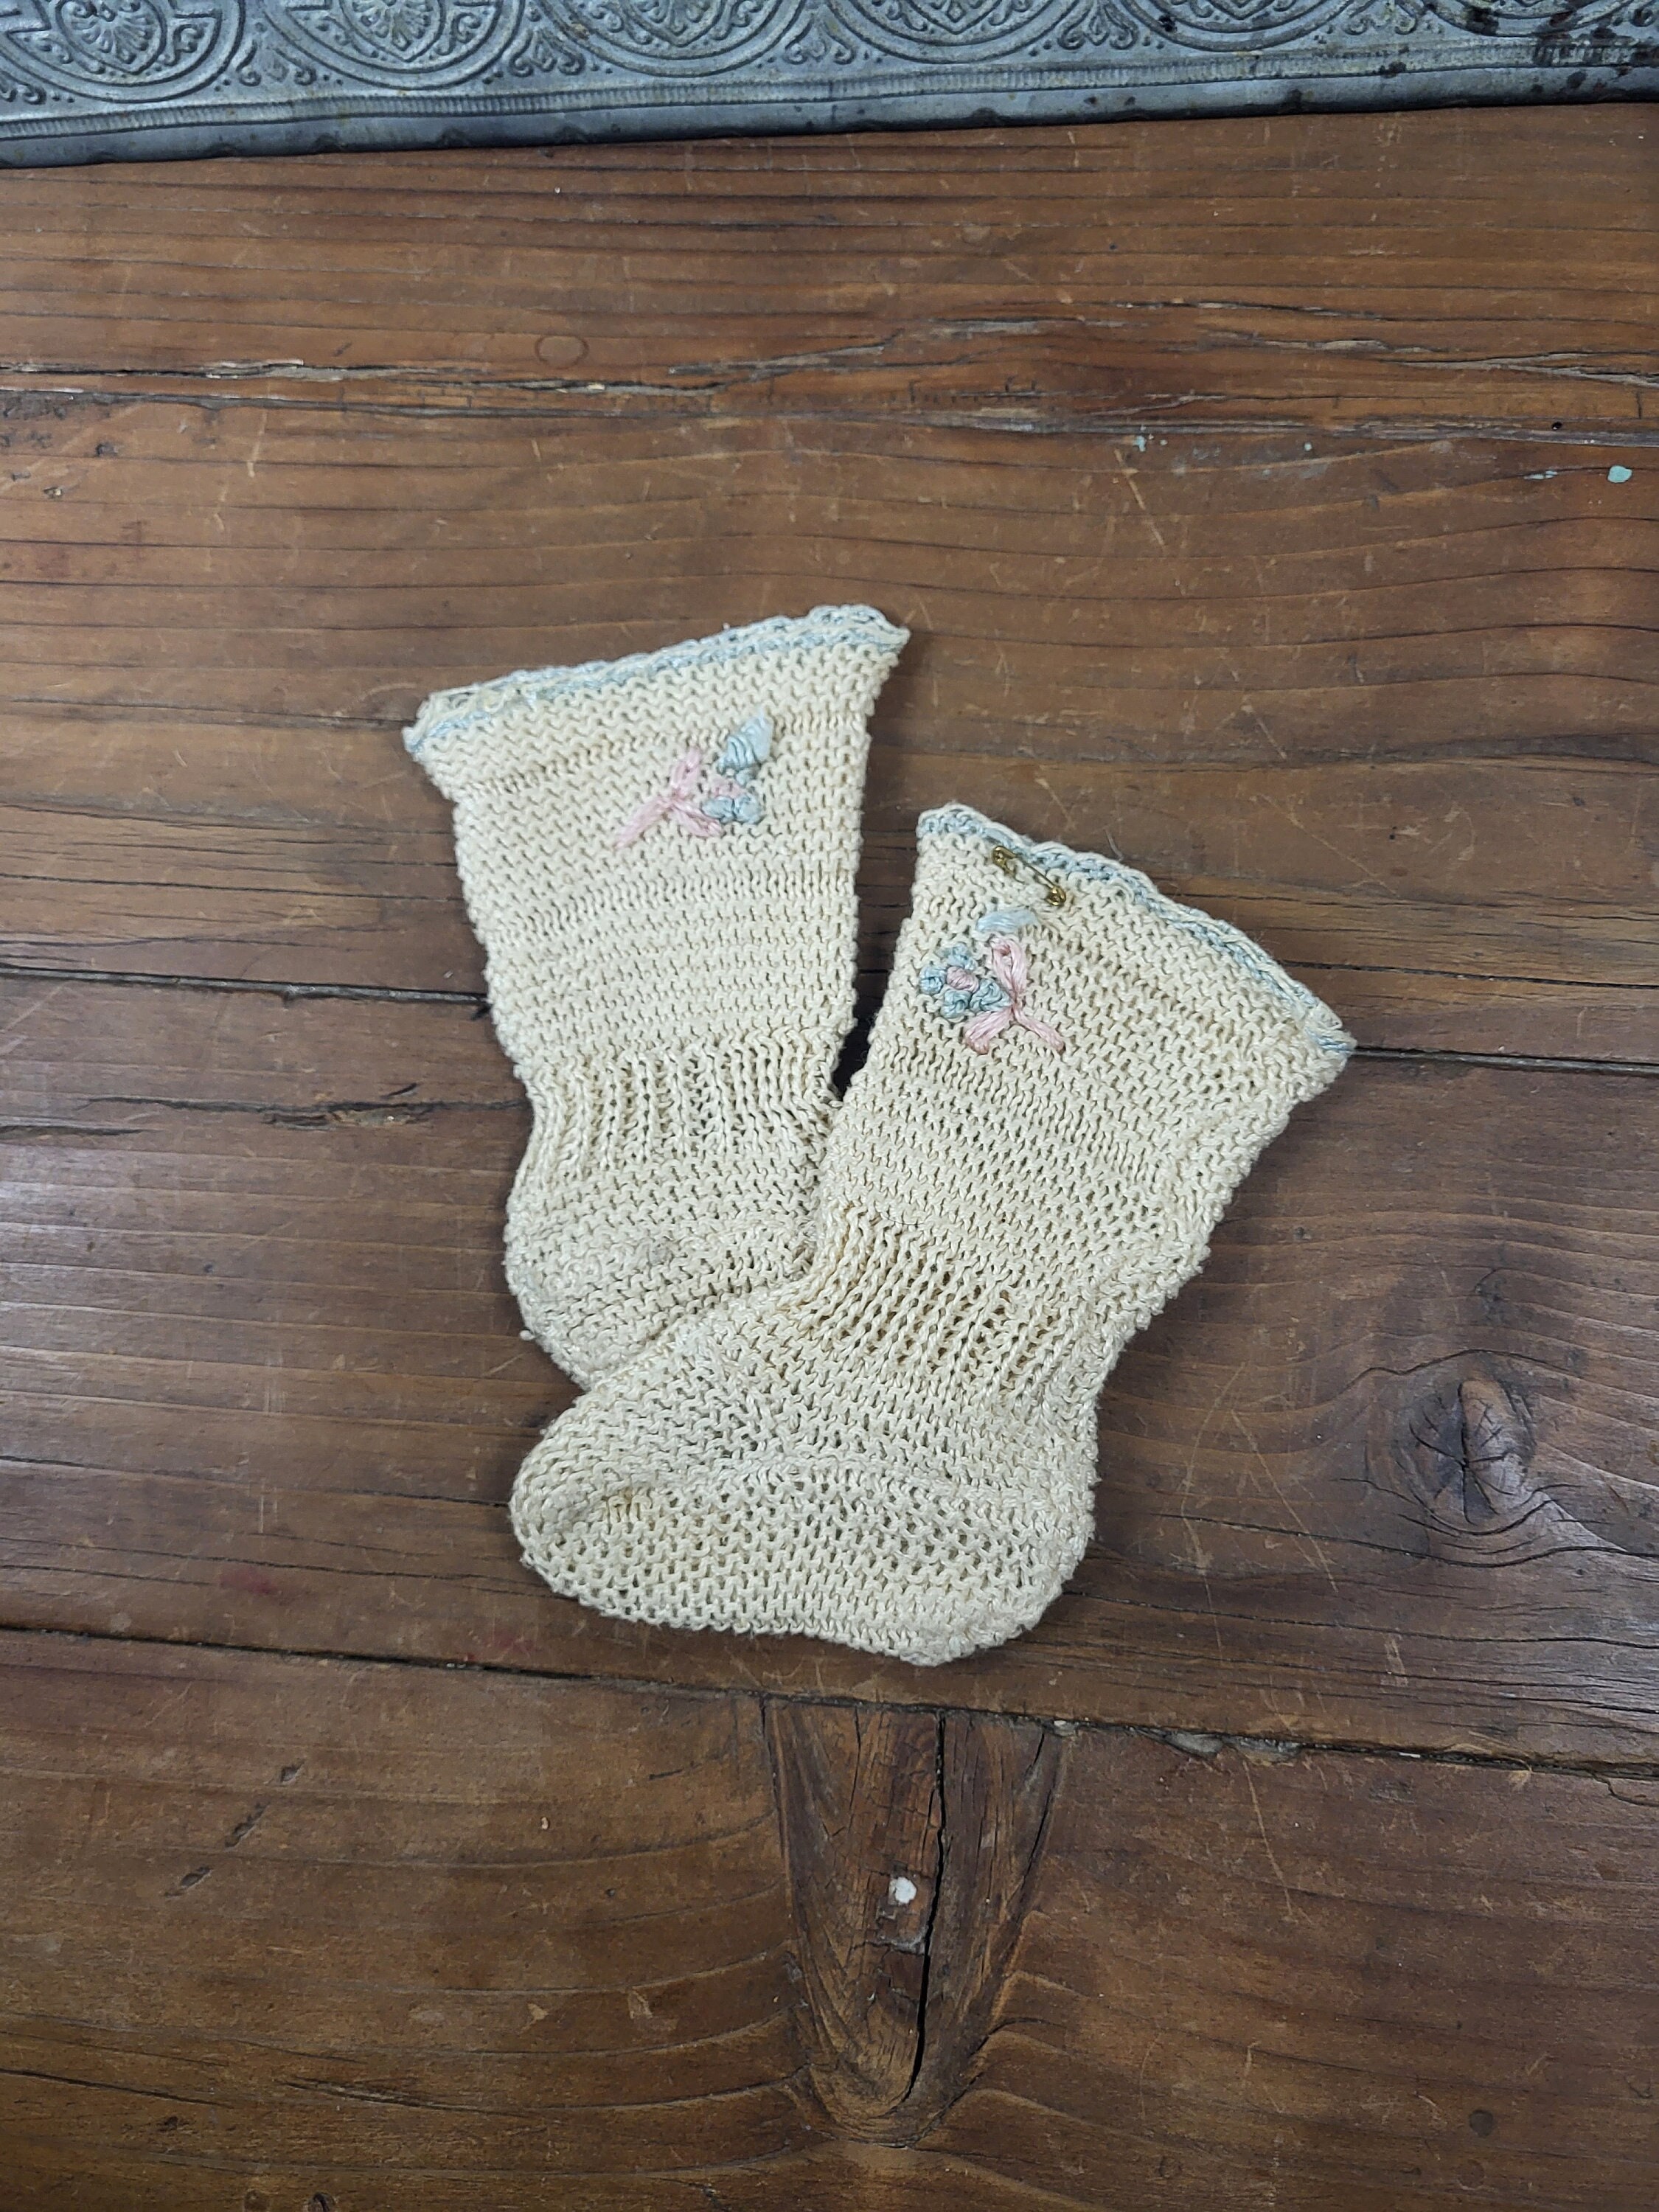 1920s vintage over the knee stockings, primitive knit socks in